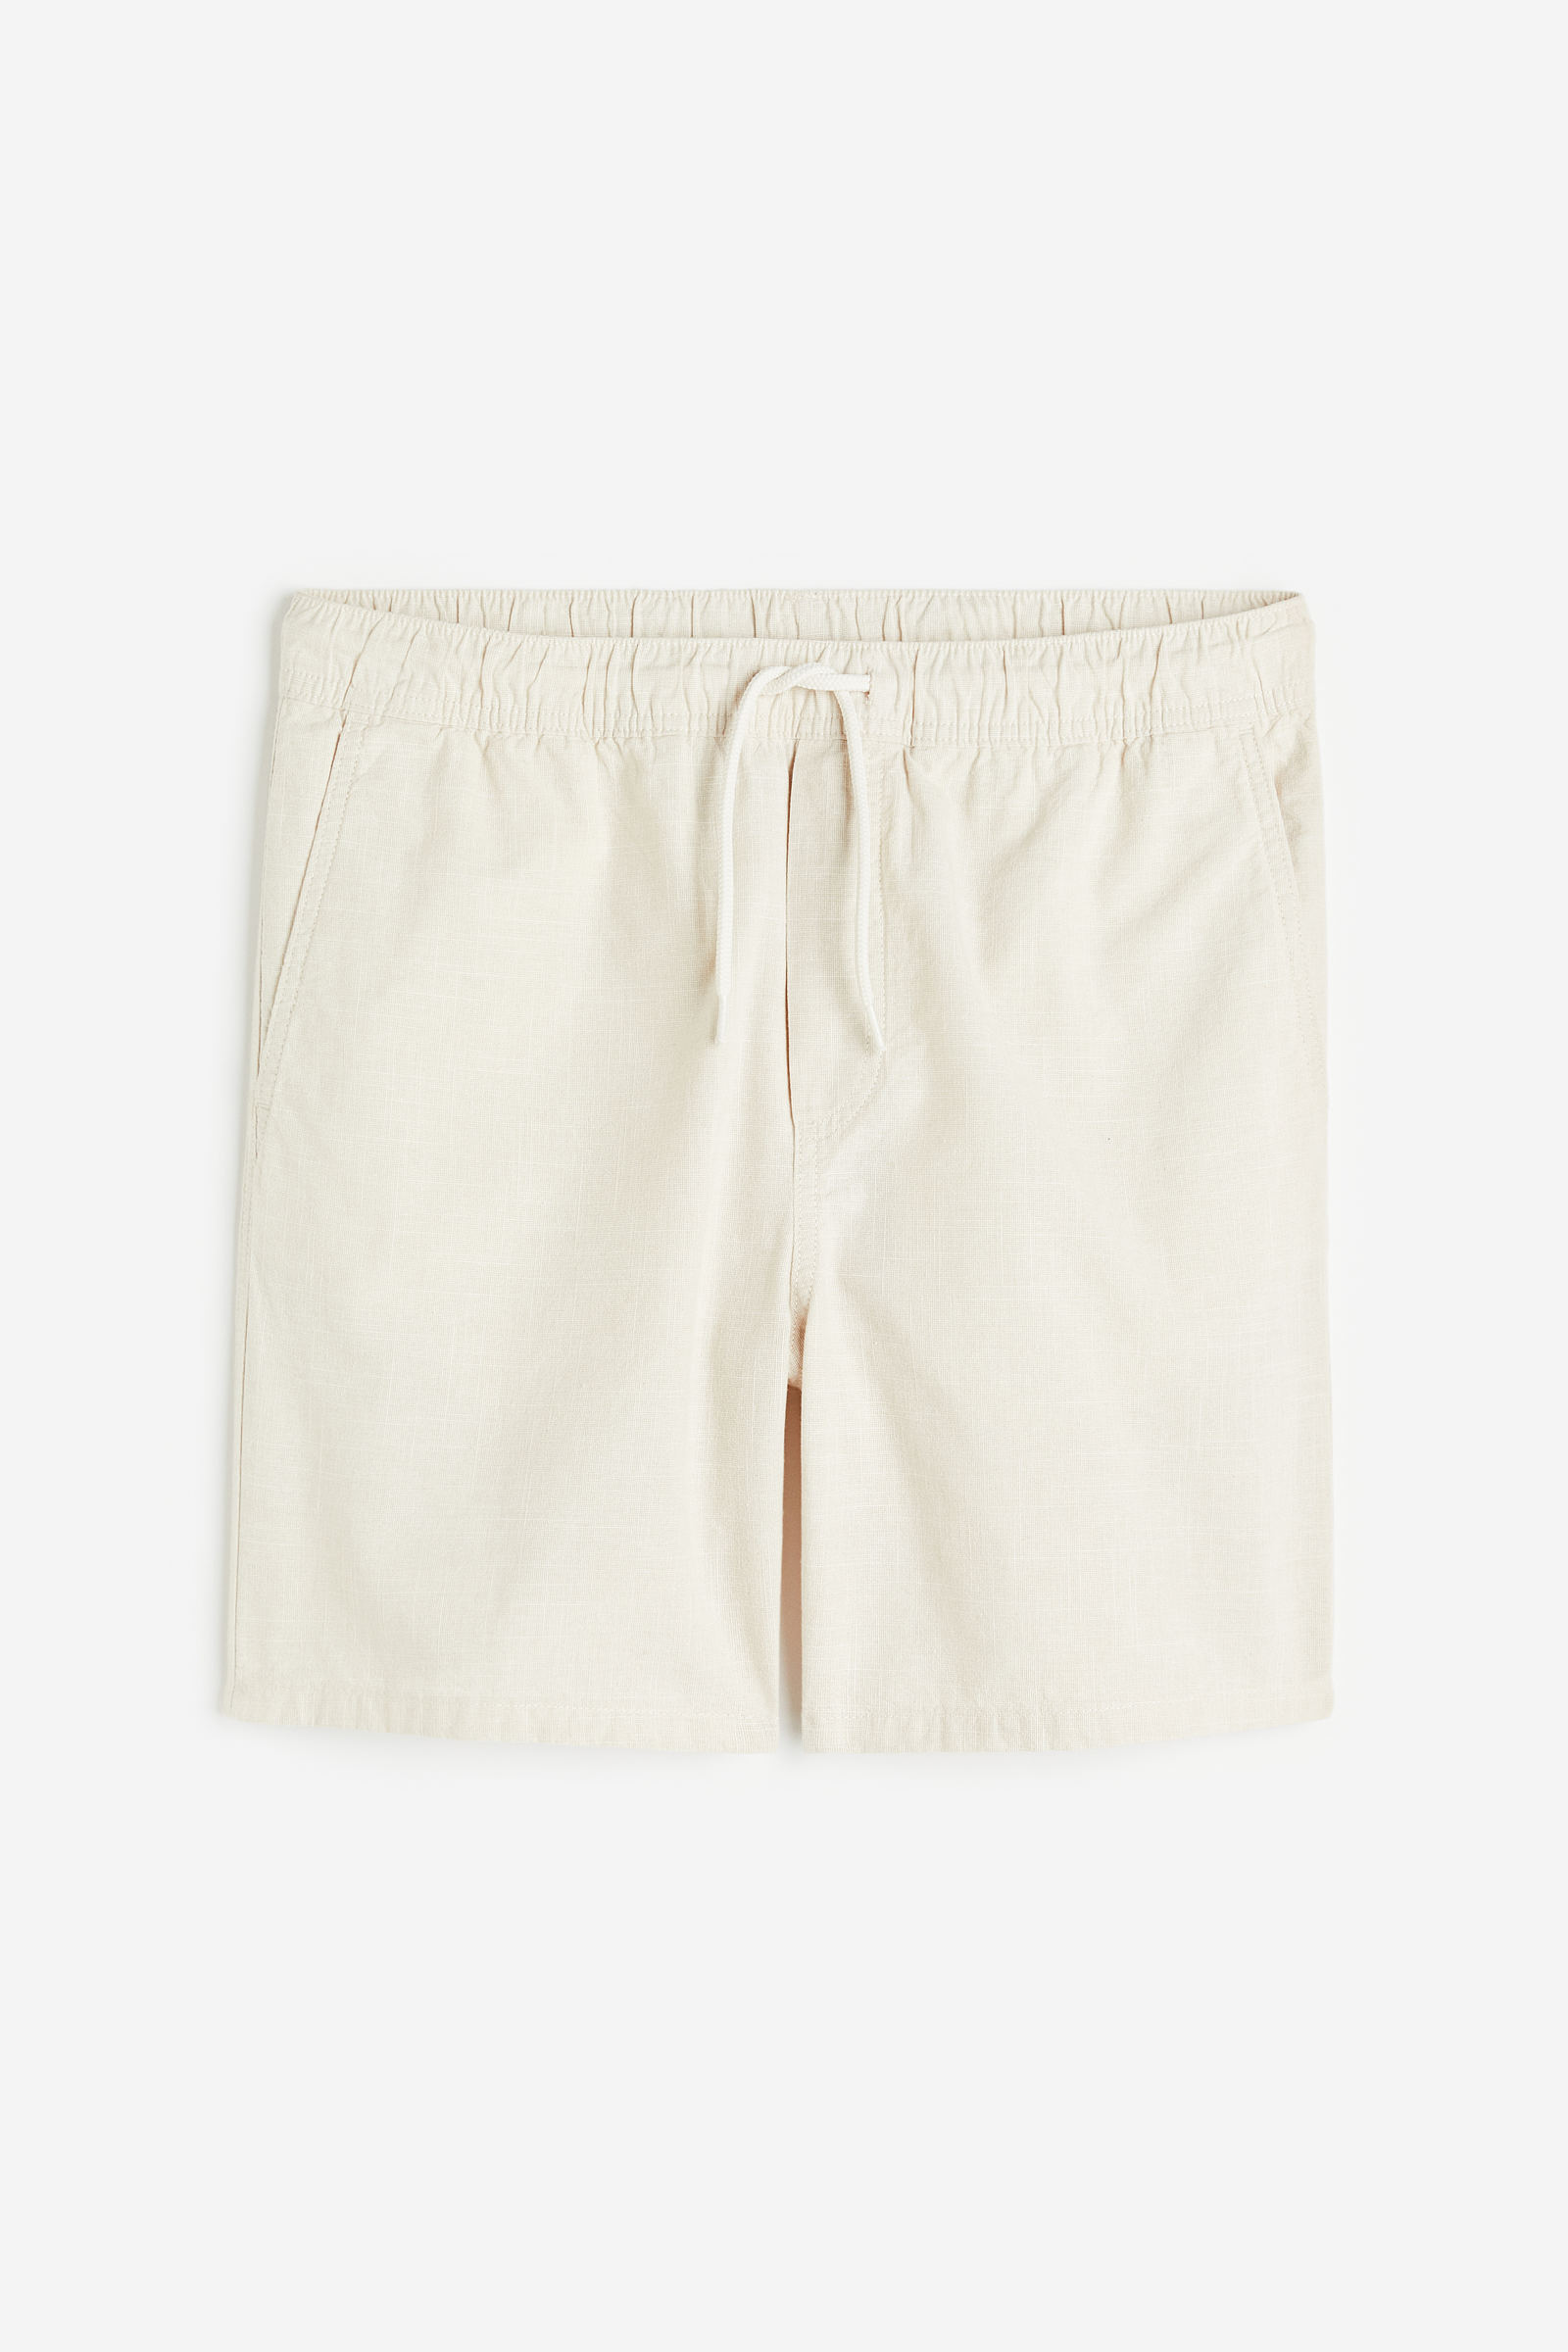 Diez pantalones cortos y bermudas rebajadísimos en H&M para ir llenando de  frescura nuestro armario de primavera con color y tejidos ligeros